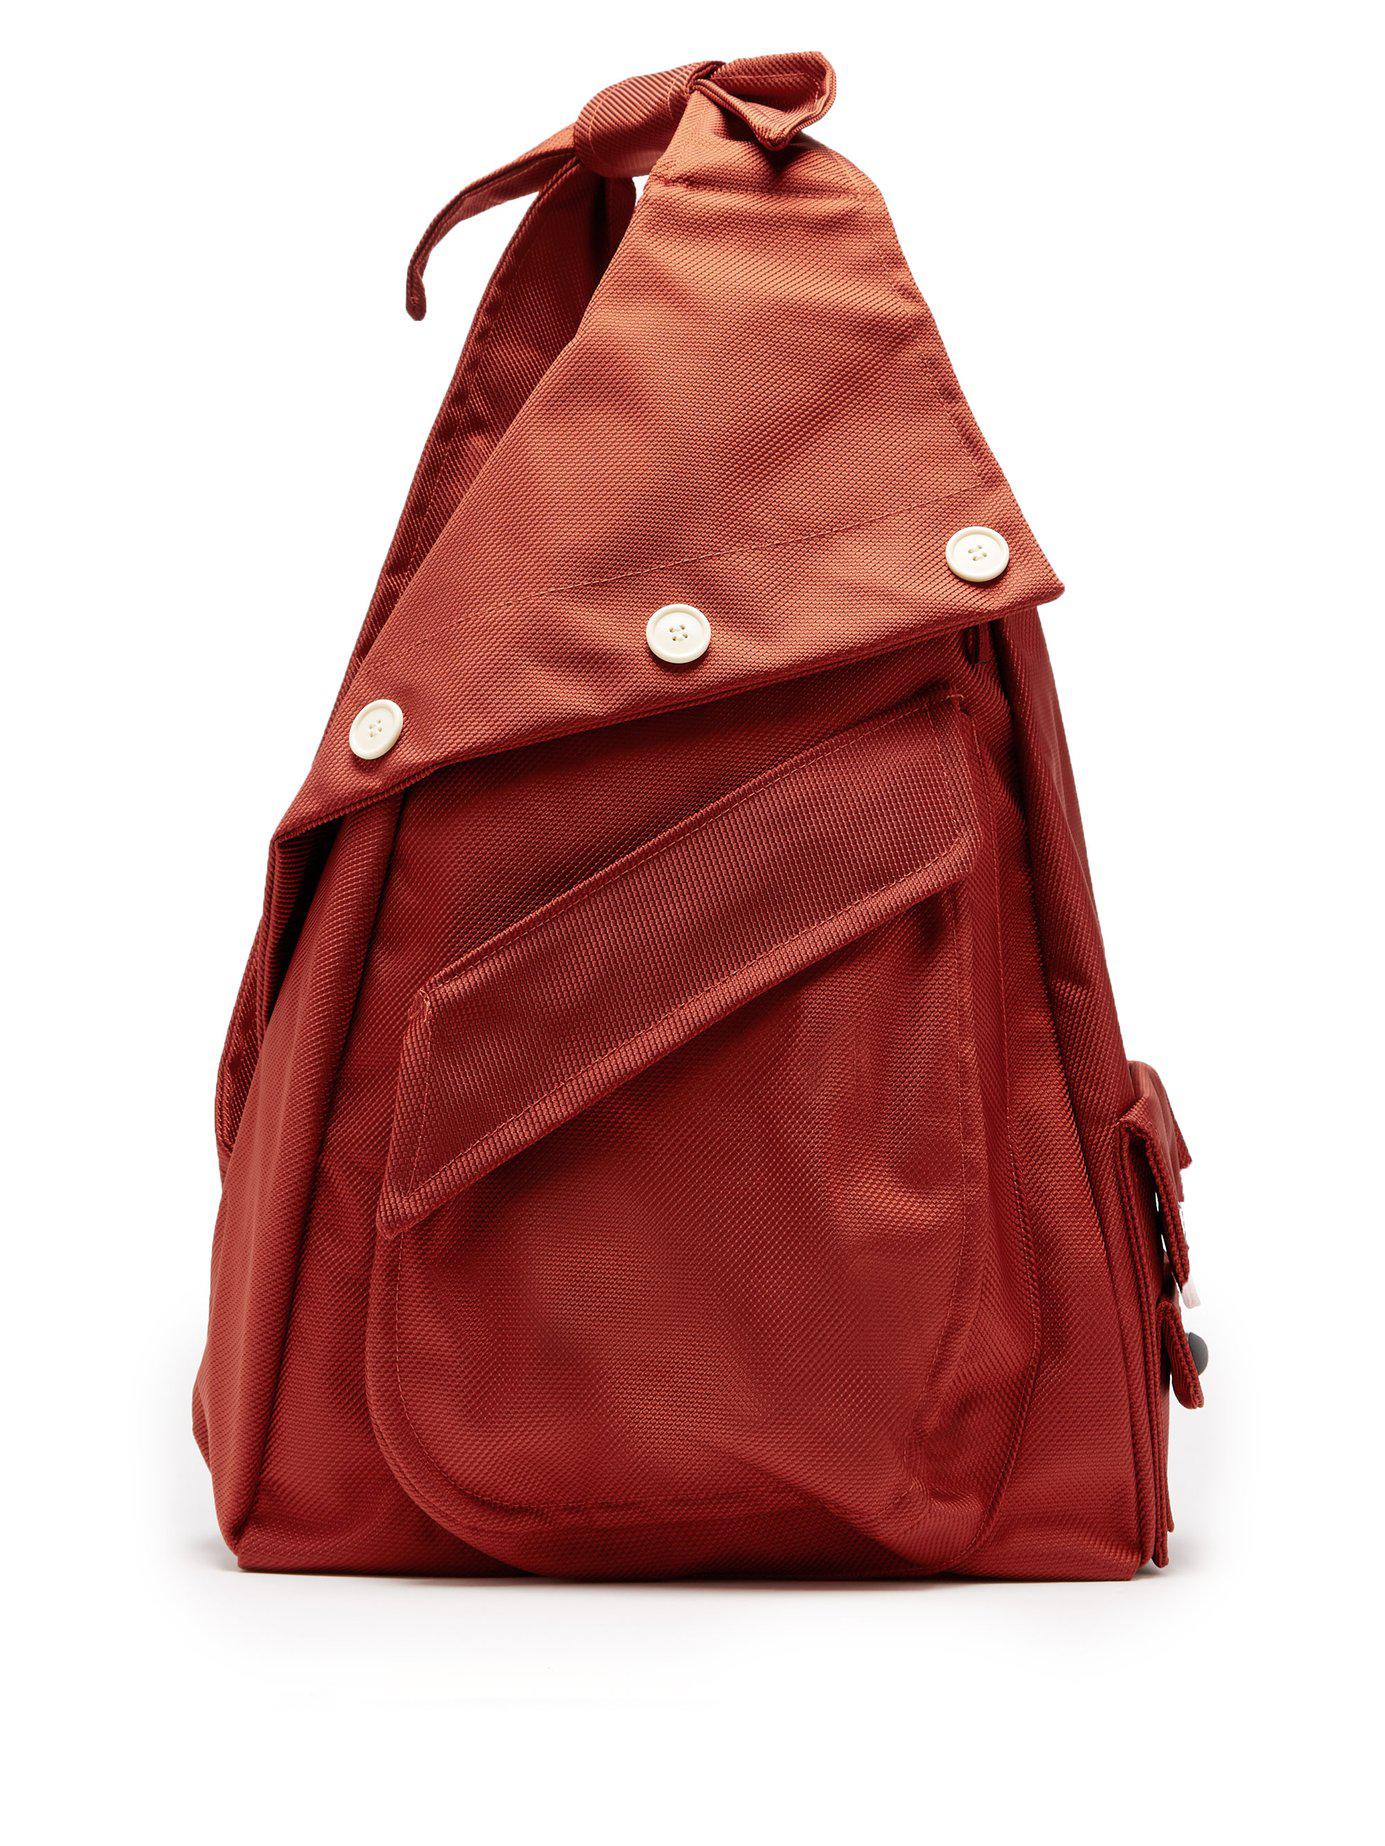 Eastpak X Raf Simons Organized Sling Backpack in Red for Men